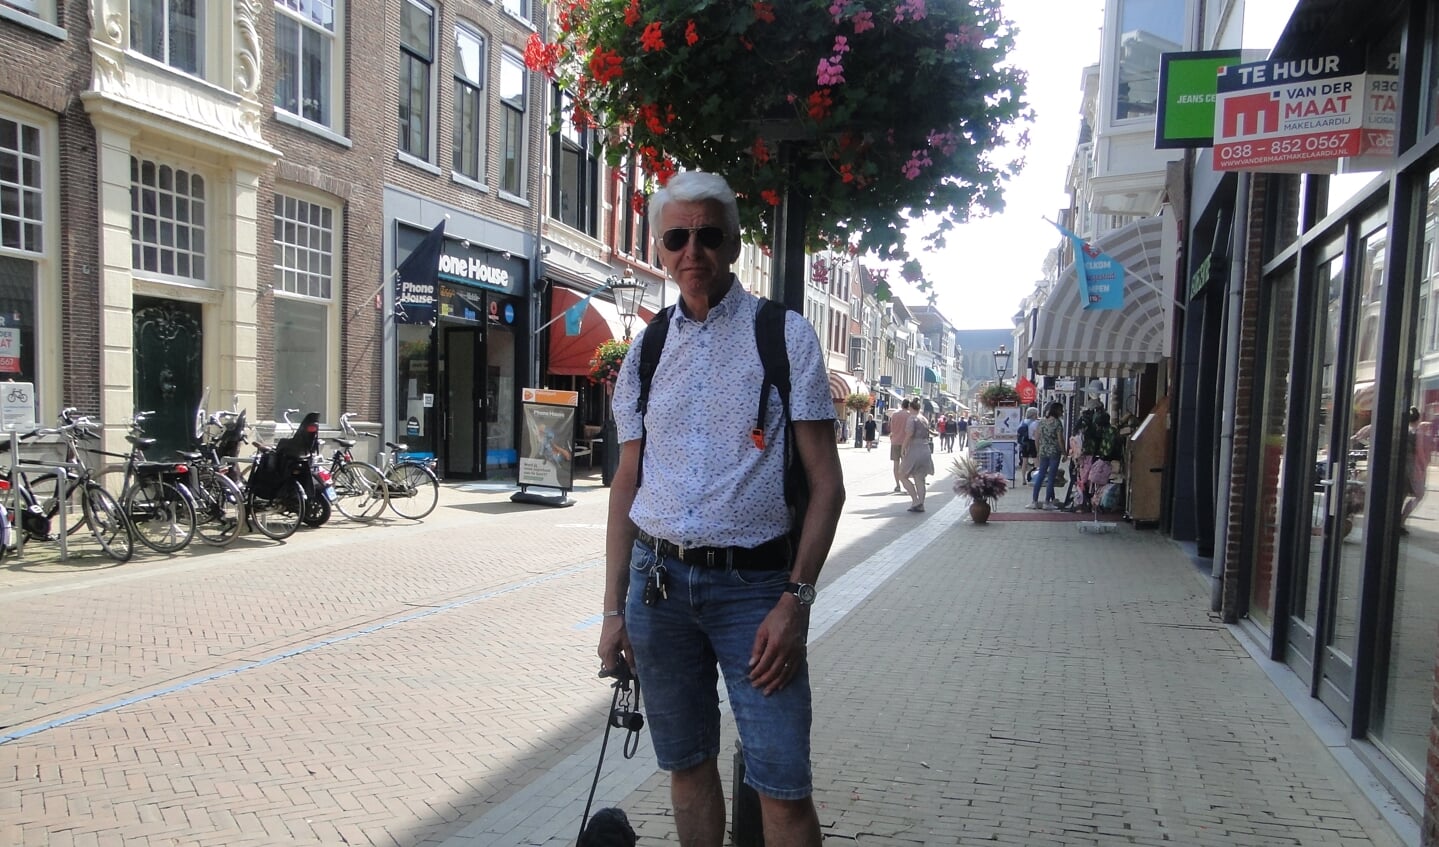 Peter uit Alphen aan den Rijn voelt zich op zijn gemak in Kampen